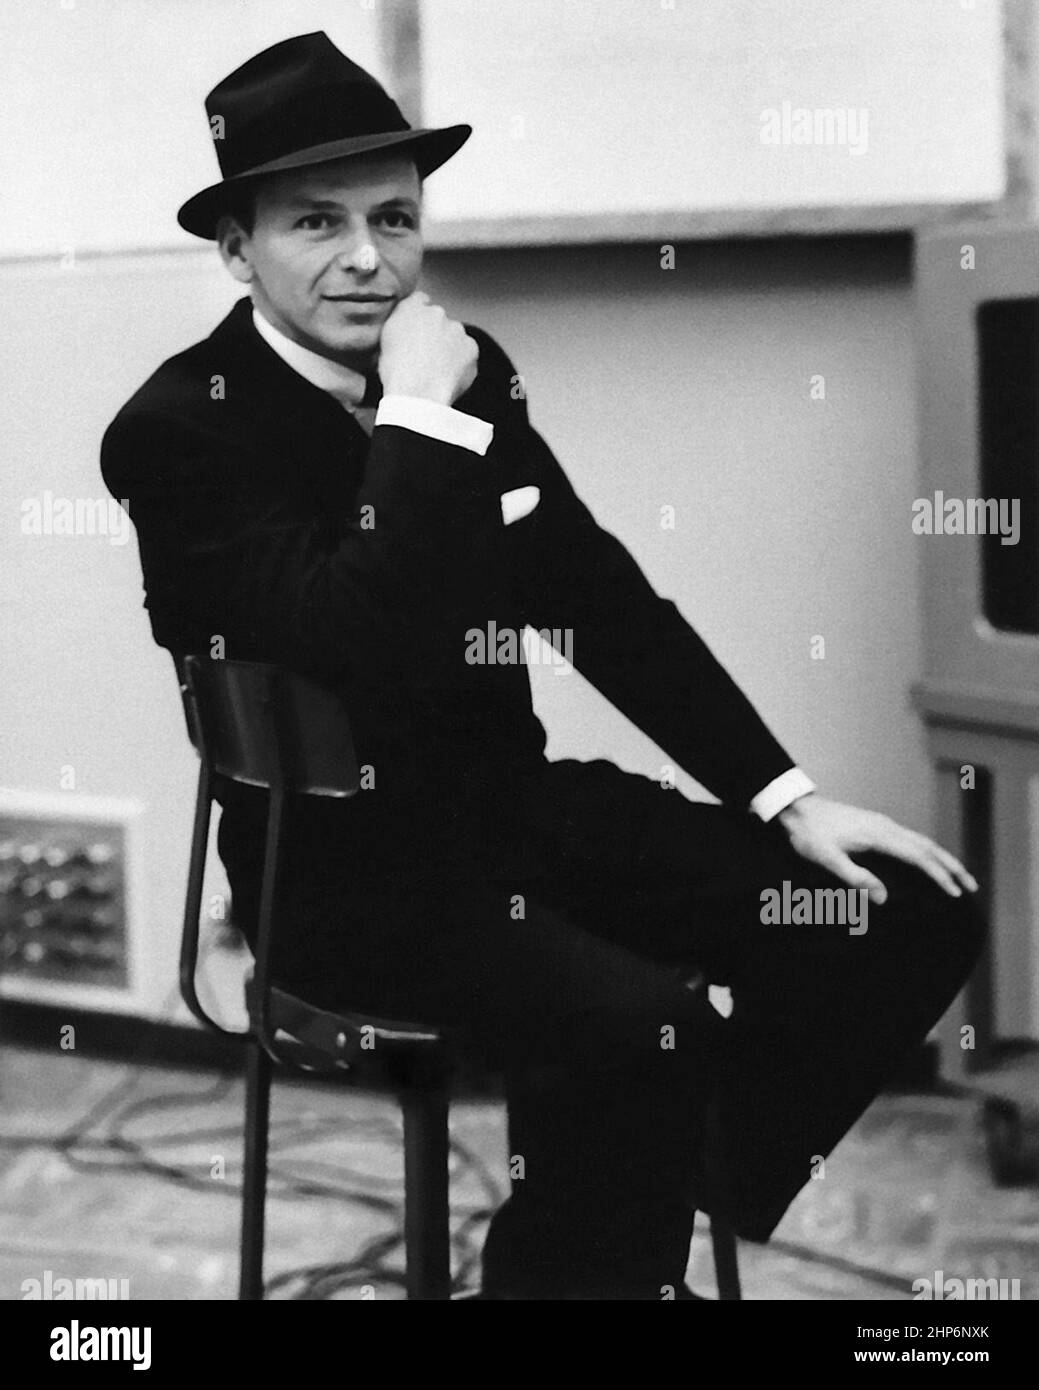 Ritratto di Frank Sinatra nello studio di registrazione, ottobre 1957. Capitol Records ha rilasciato la foto pubblicitaria alla stampa per promuovere l'apparizione di Sinatra nel film Pal Joey. Foto Stock